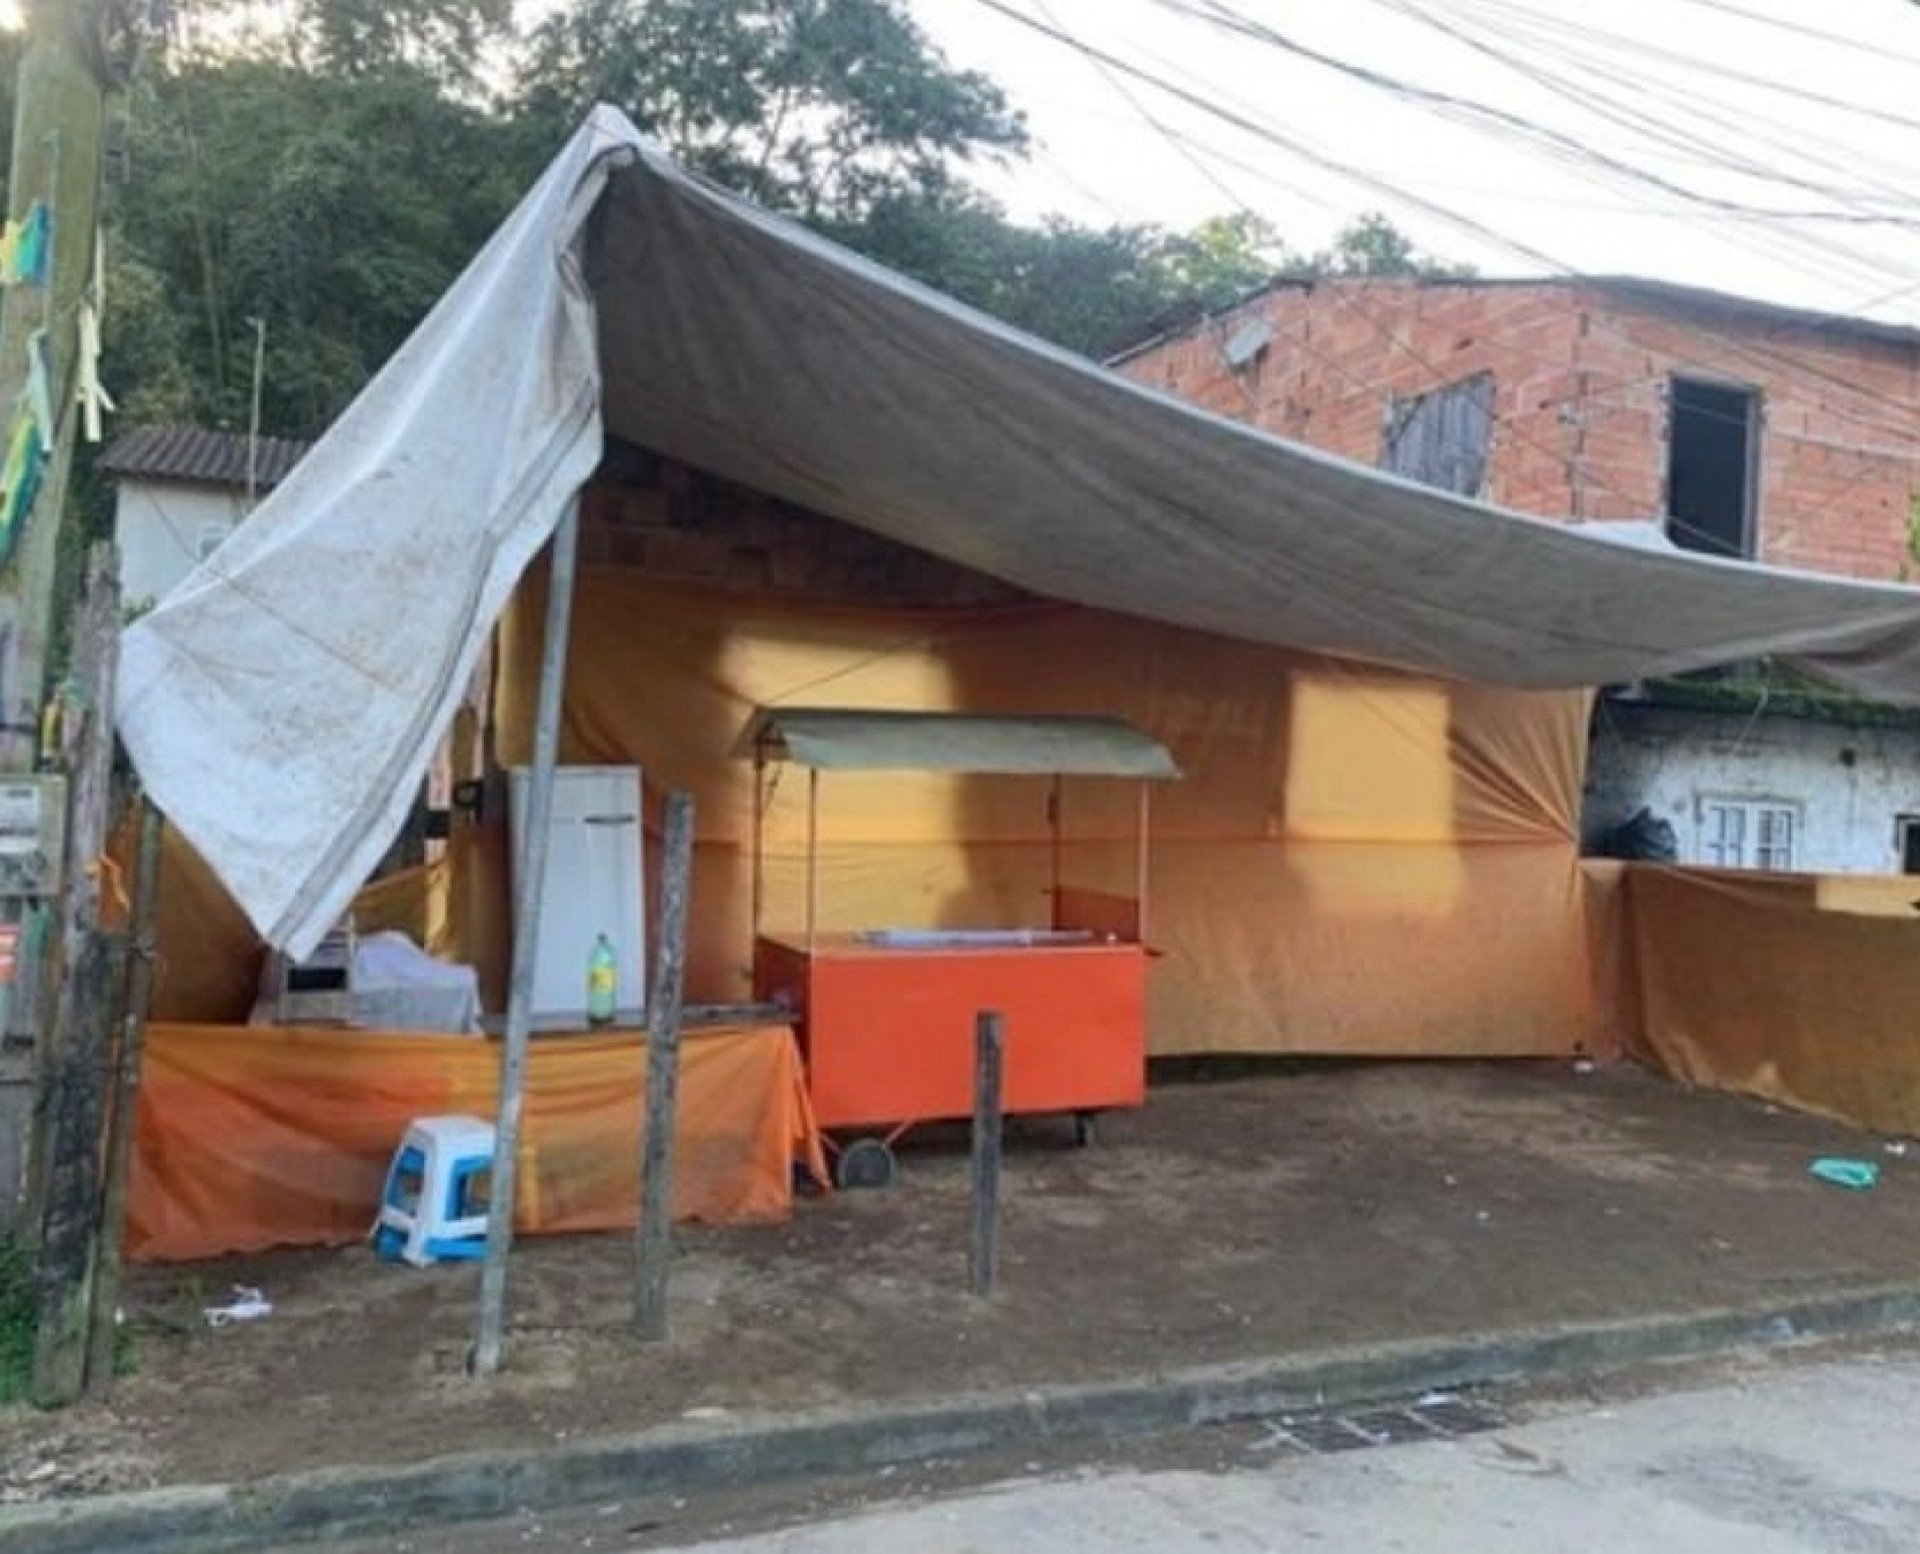 Tenda usada como ponto de venda de drogas foi desmontada pela PM em Paraty - Divulgação/PM